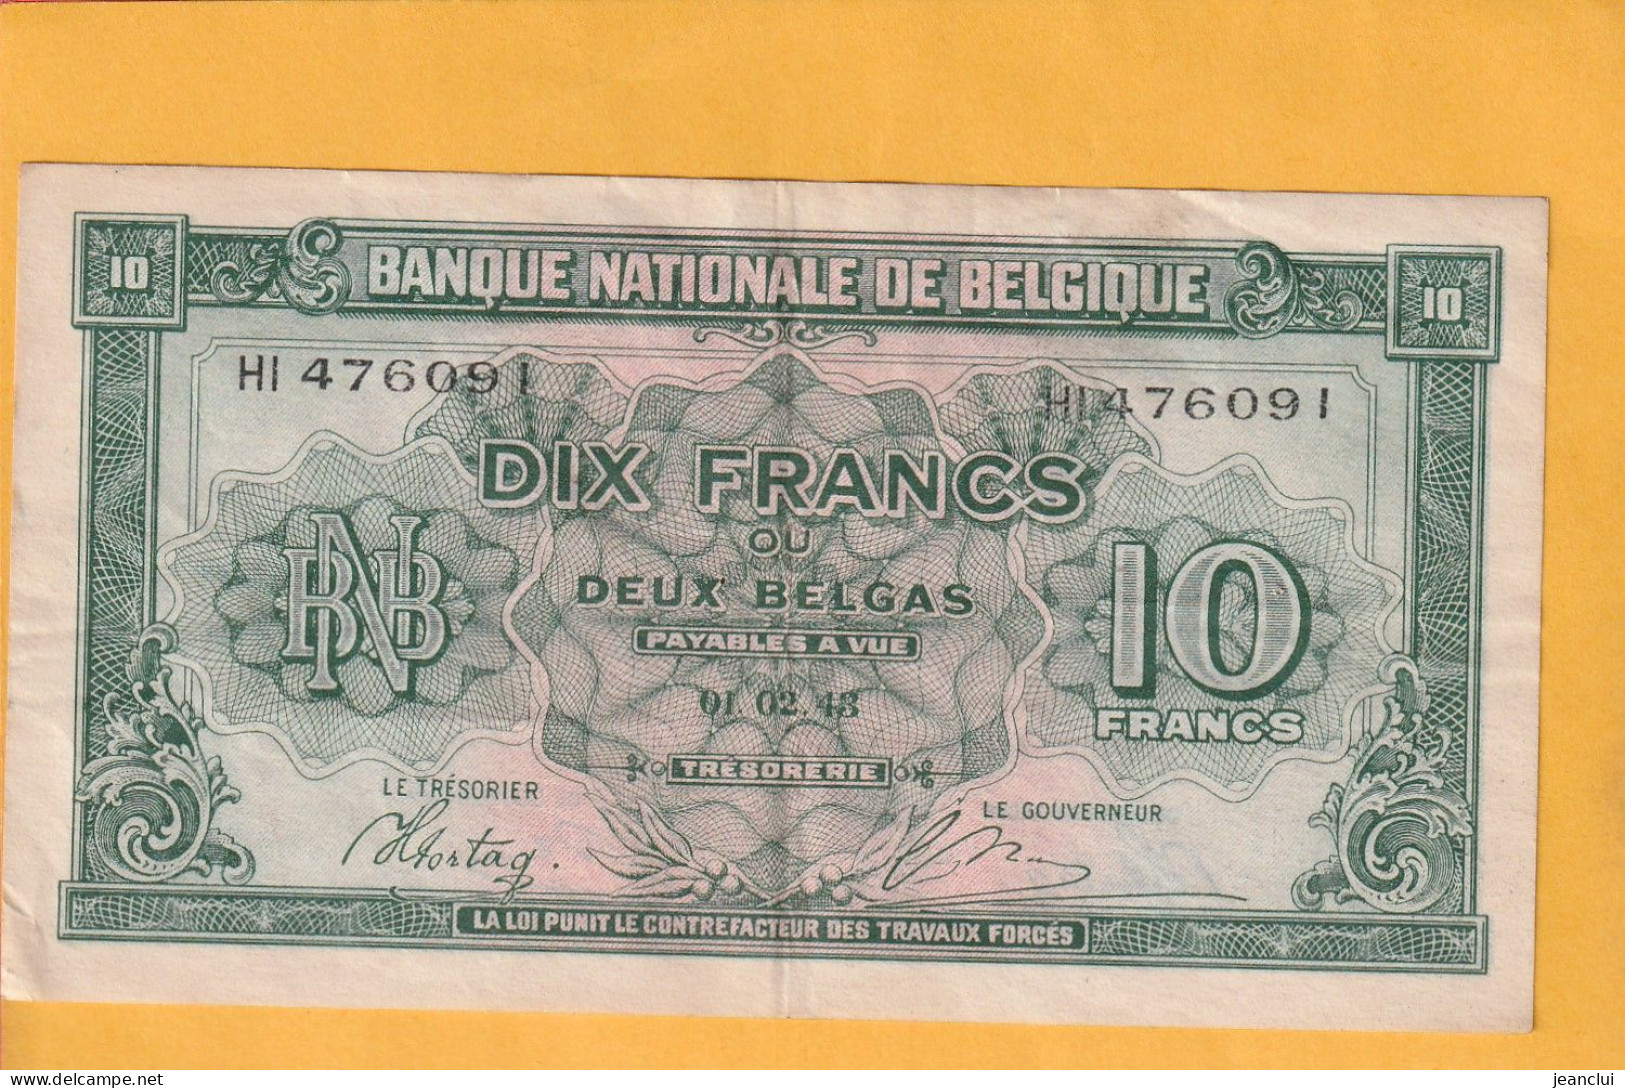 BANQUE NATIONALE DE BELGIQUE . 10 FRANCS = 2 BELGAS  . 01-02-1943 . N°  HI 476091 .  2 SCANNES .  BILLET USITE - 10 Franchi-2 Belgas